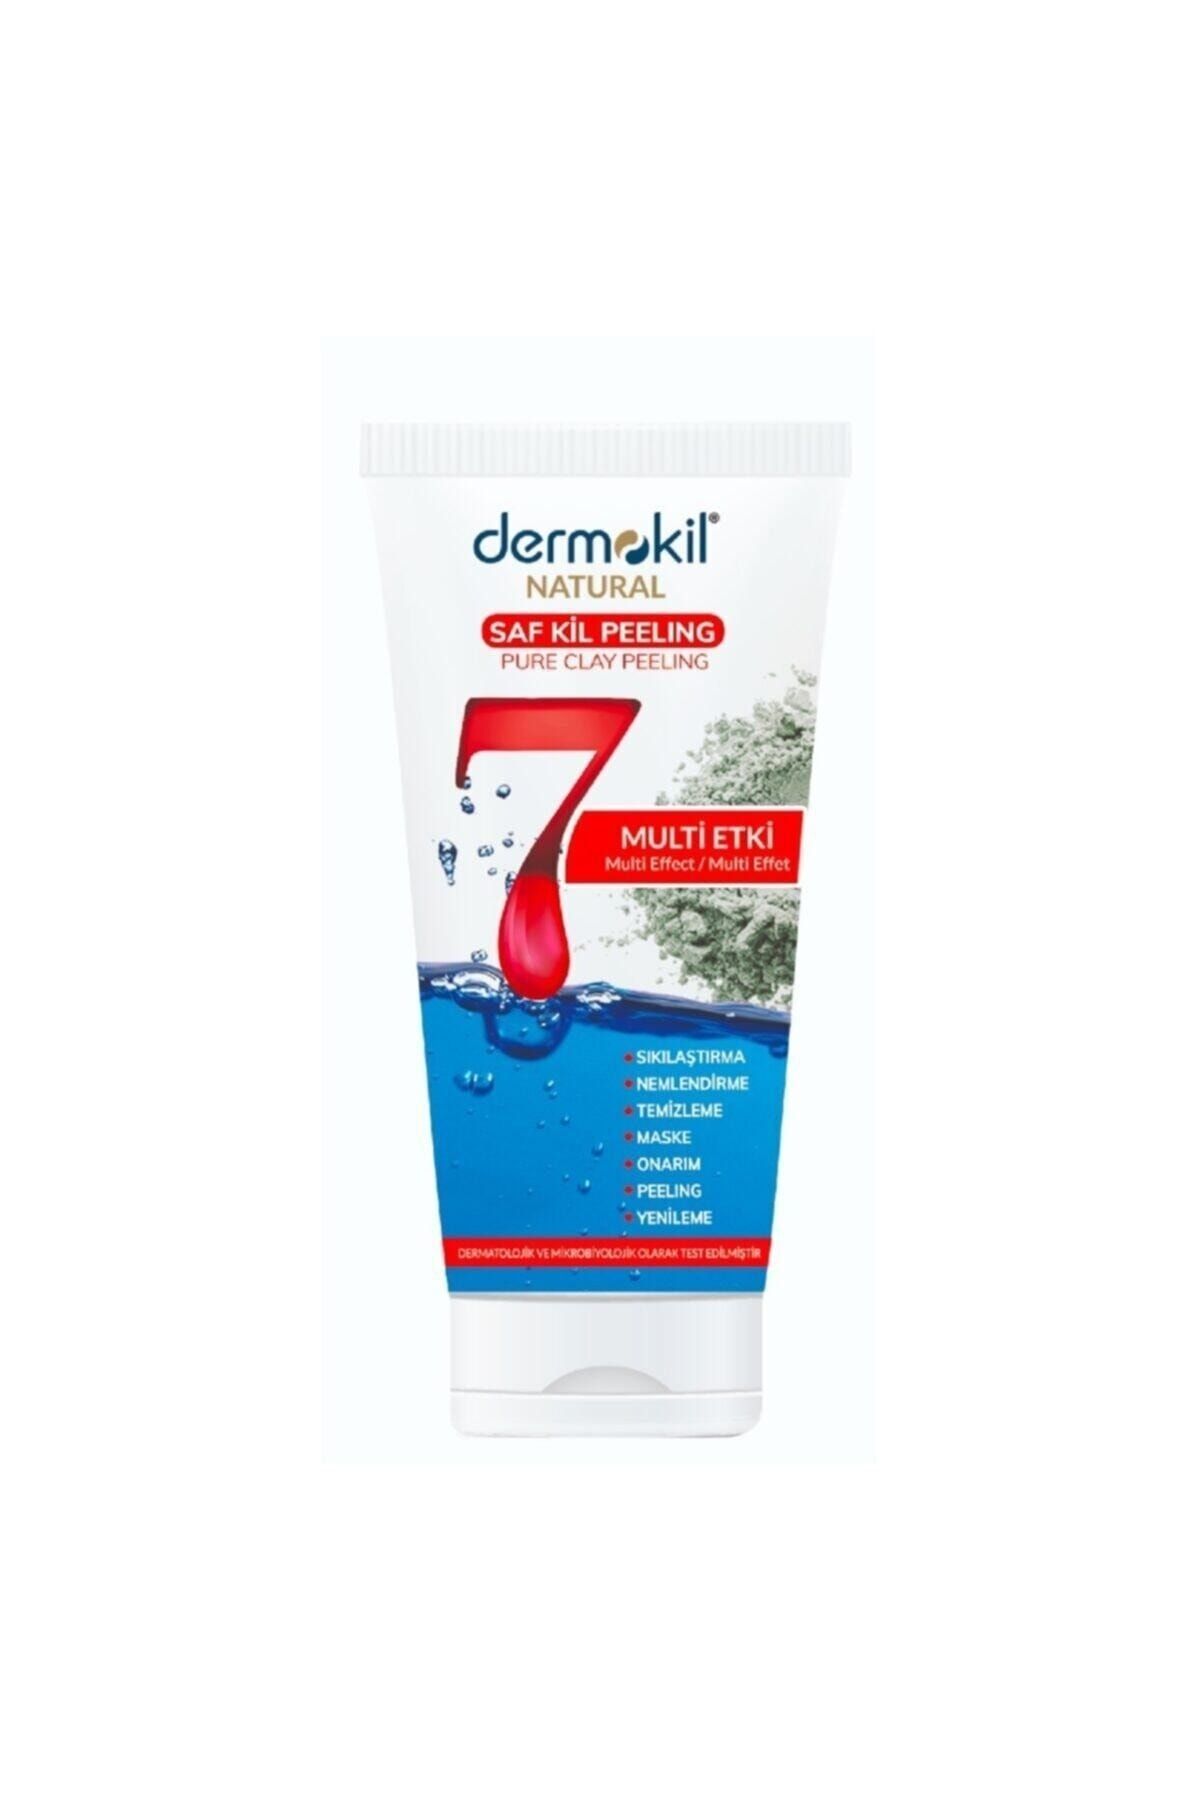 Dermokil Natural Skin 7 Etkili Günlük Cilt Bakım Kürü 150 Ml Peeling